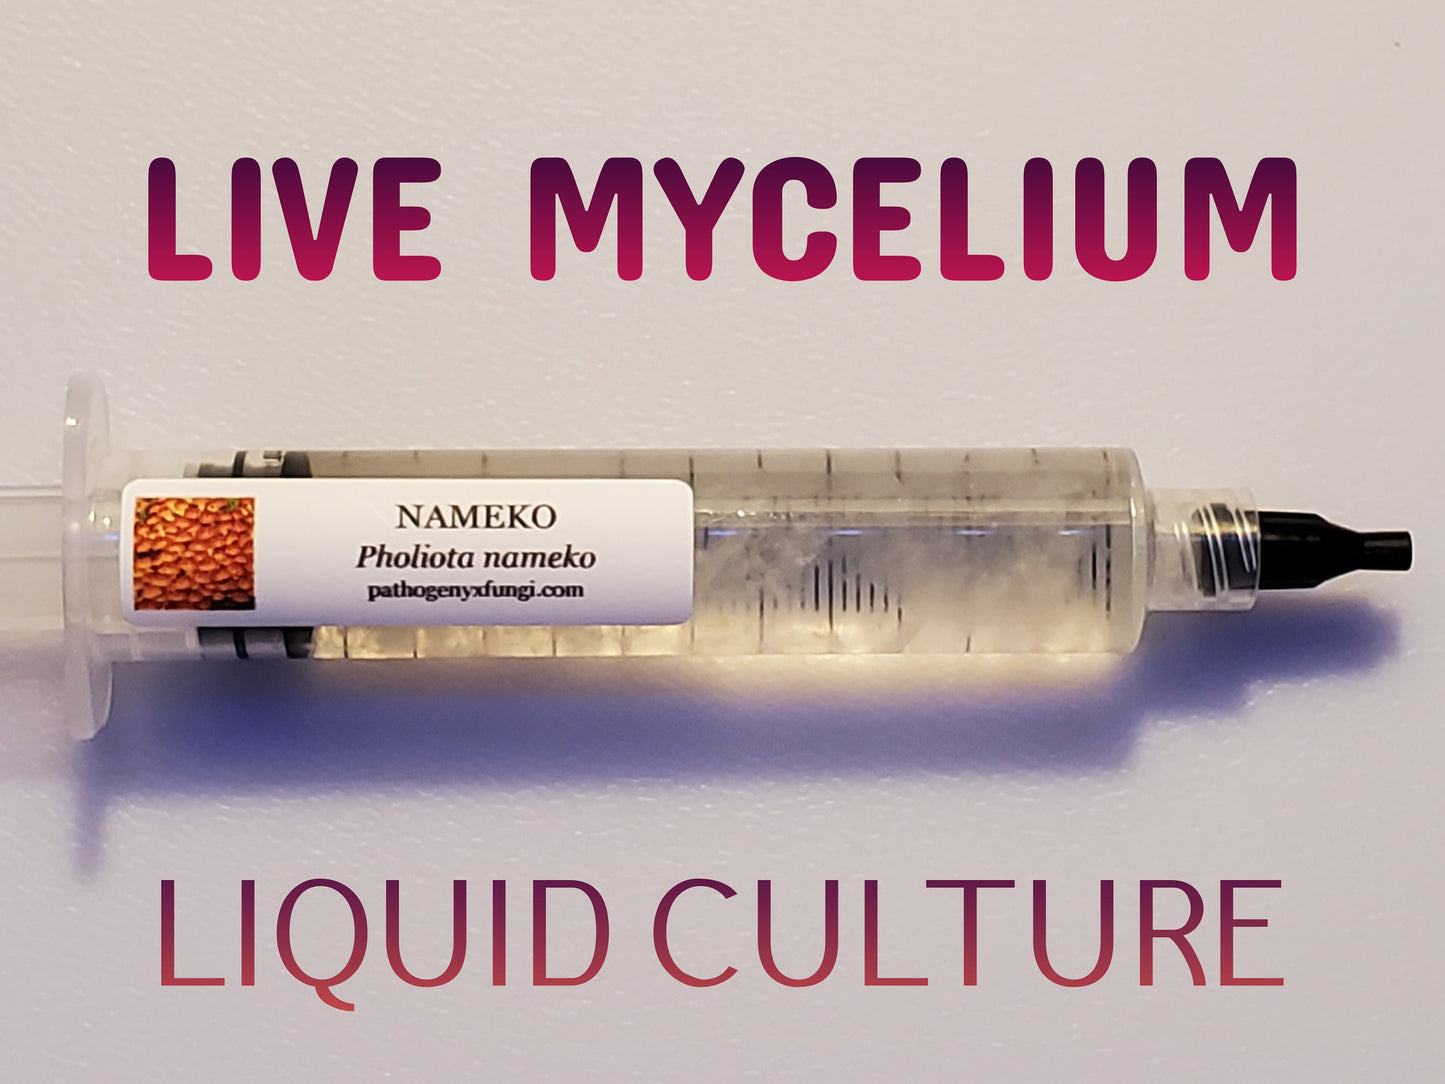 NAMEKO Mushroom, liquid culture syringe, Premium Mycelium™